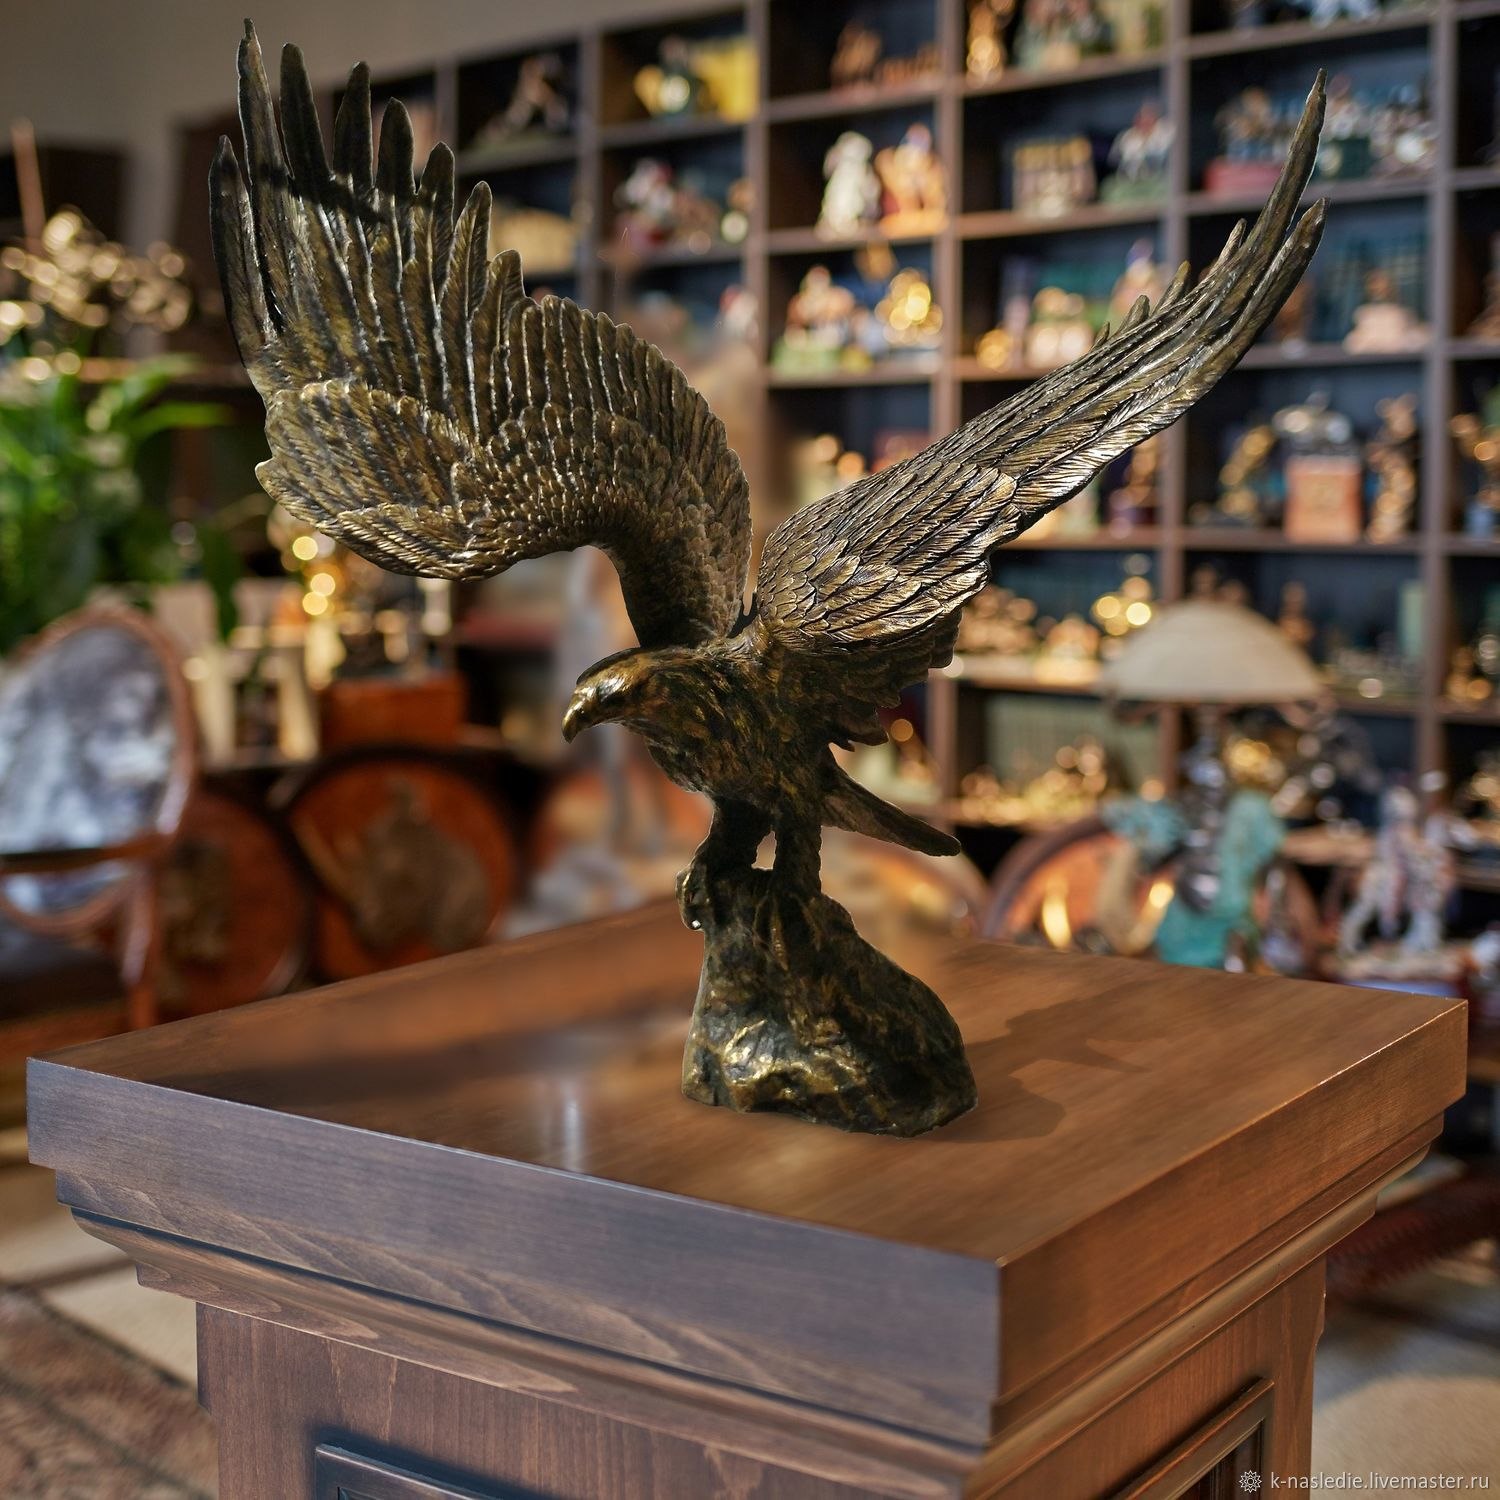 Купить орла спб. Орел из бронзы. Статуэтка Орел. Статуя бронзовый Орел. Бронзовая фигура орла.